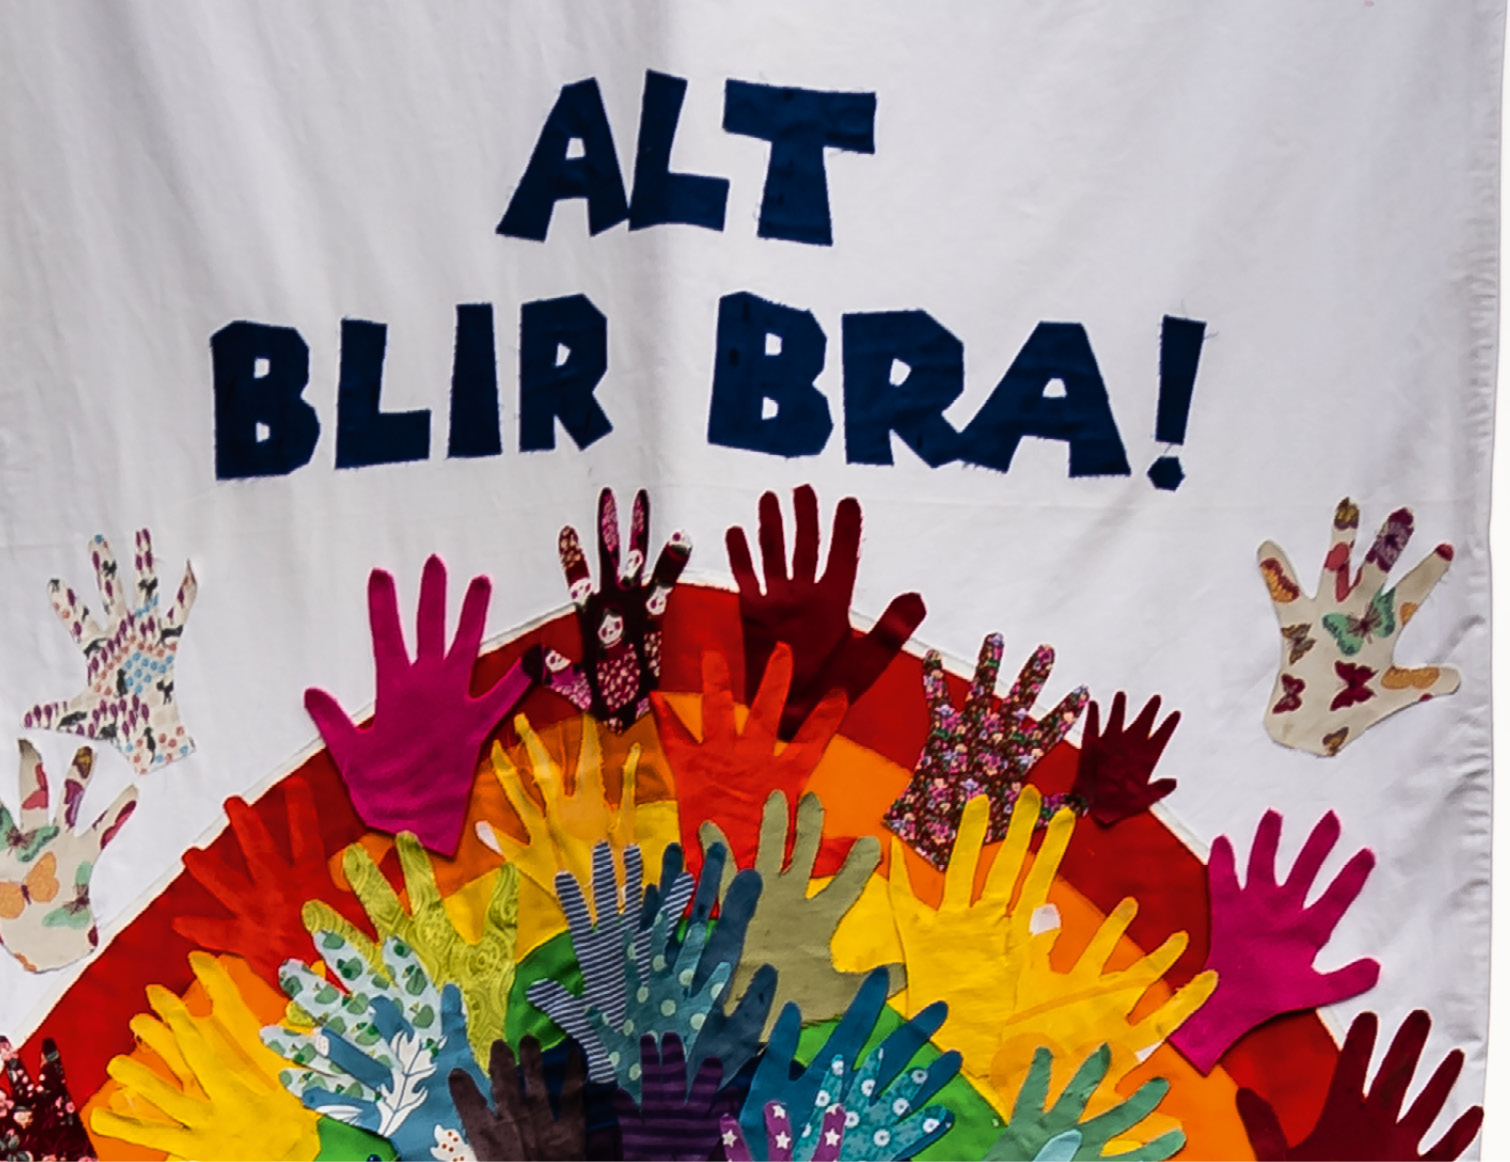 Utsnitt av fane med teksten "Alt blir bra", regnbuemotiv dekorert med barnehender klipt ut av stoff